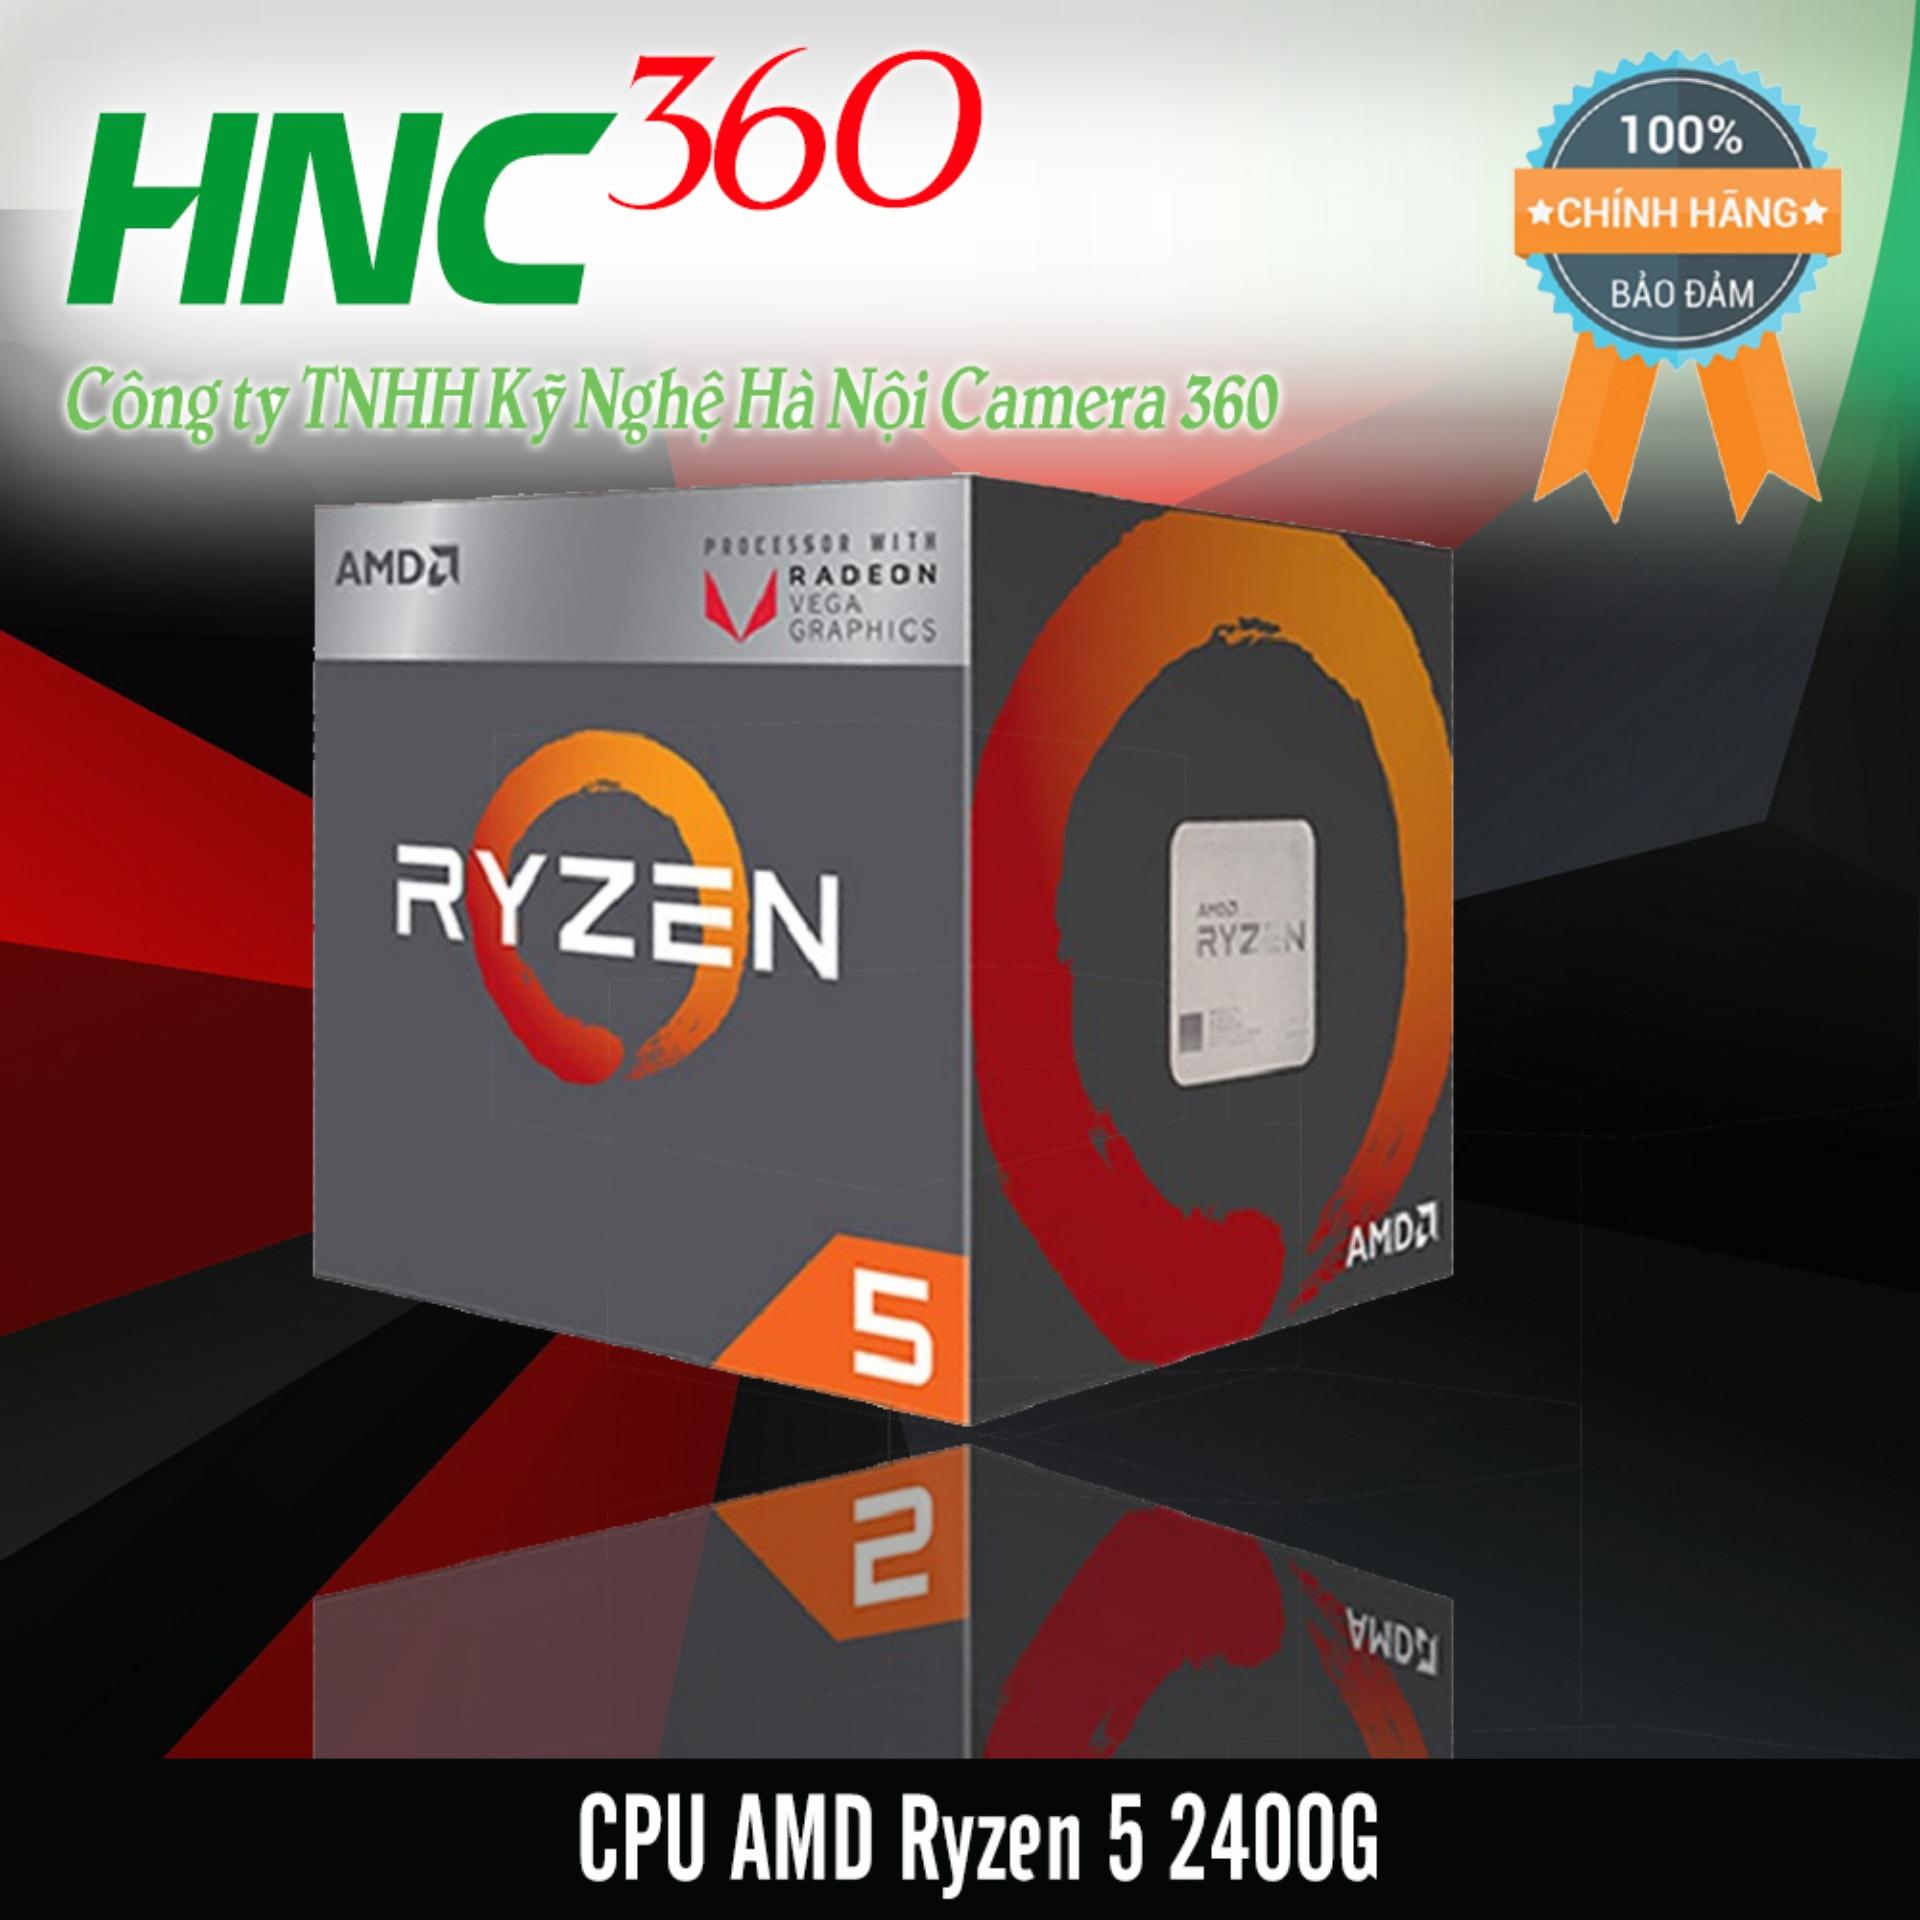 CPU AMD Ryzen 5 2400G 3.6 GHz, Giá tháng 2/2021